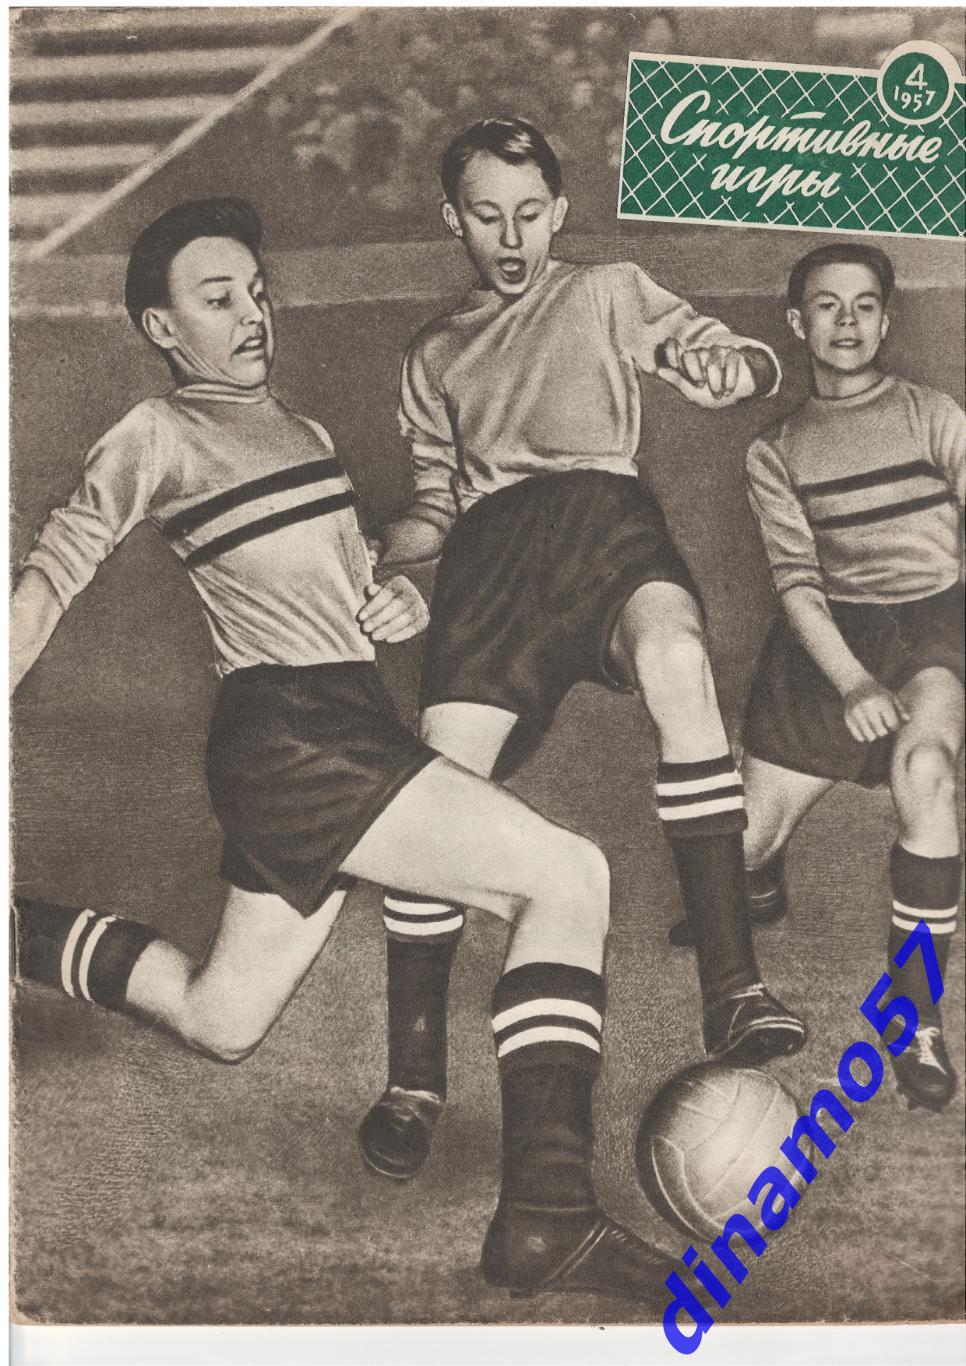 Журнал Спортивные игры№ 4 1957